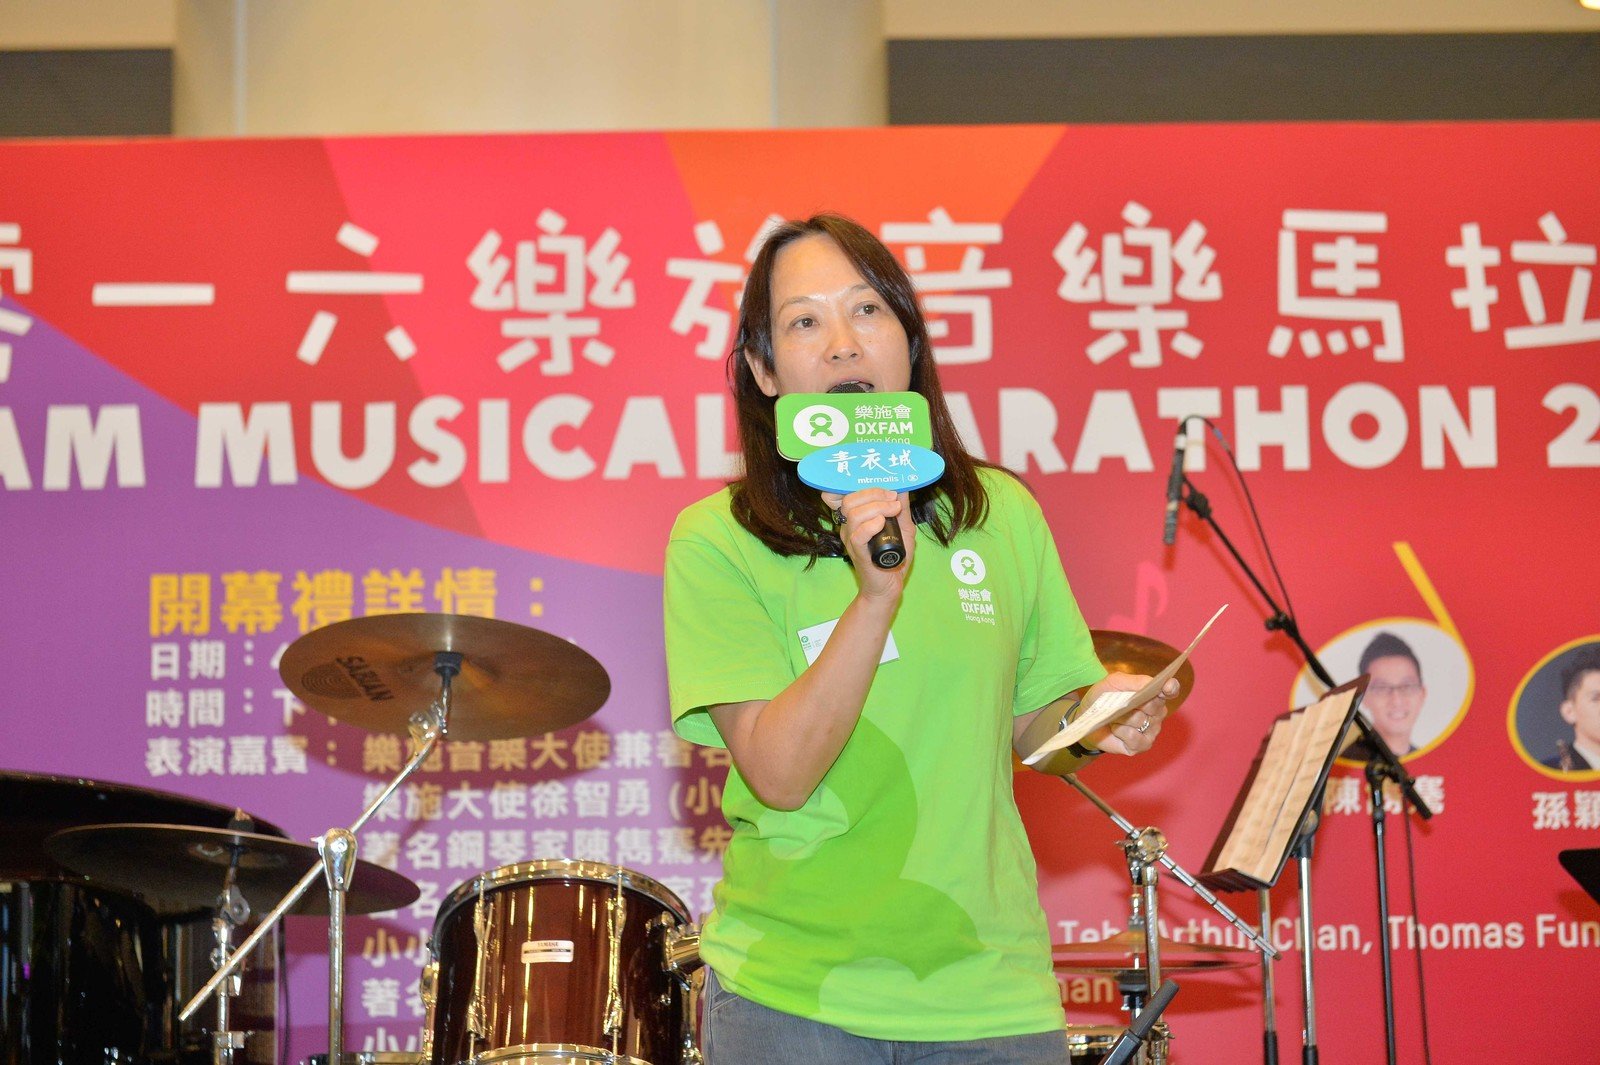 乐施会总裁梁咏雩致辞时表示感谢所有参加者及公众透过参与「乐施音乐马拉松」，热心为乐施会的发展项目和倡议工作筹款，共建「无穷世界」。